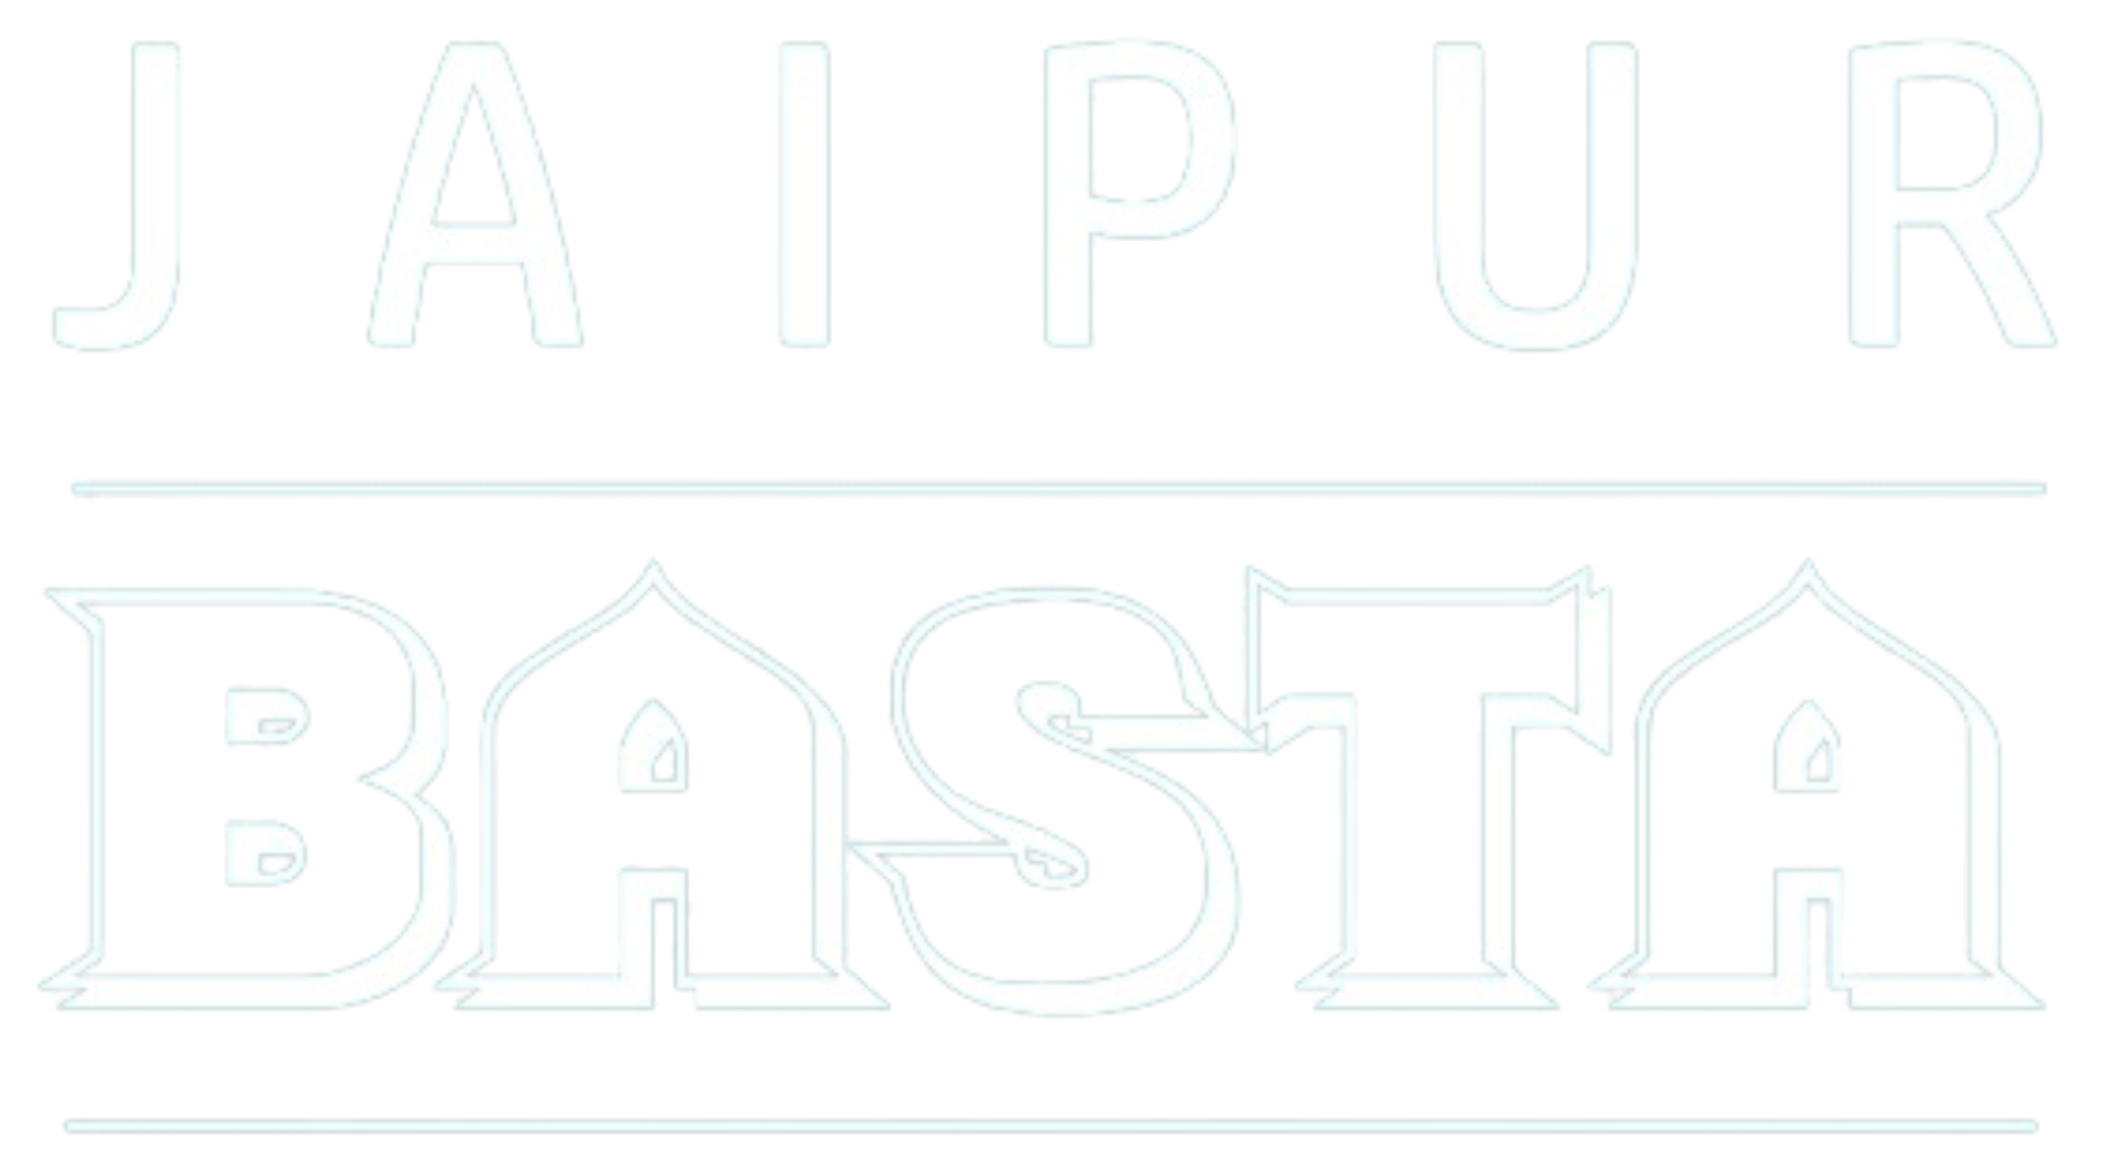 Jaipur Basta